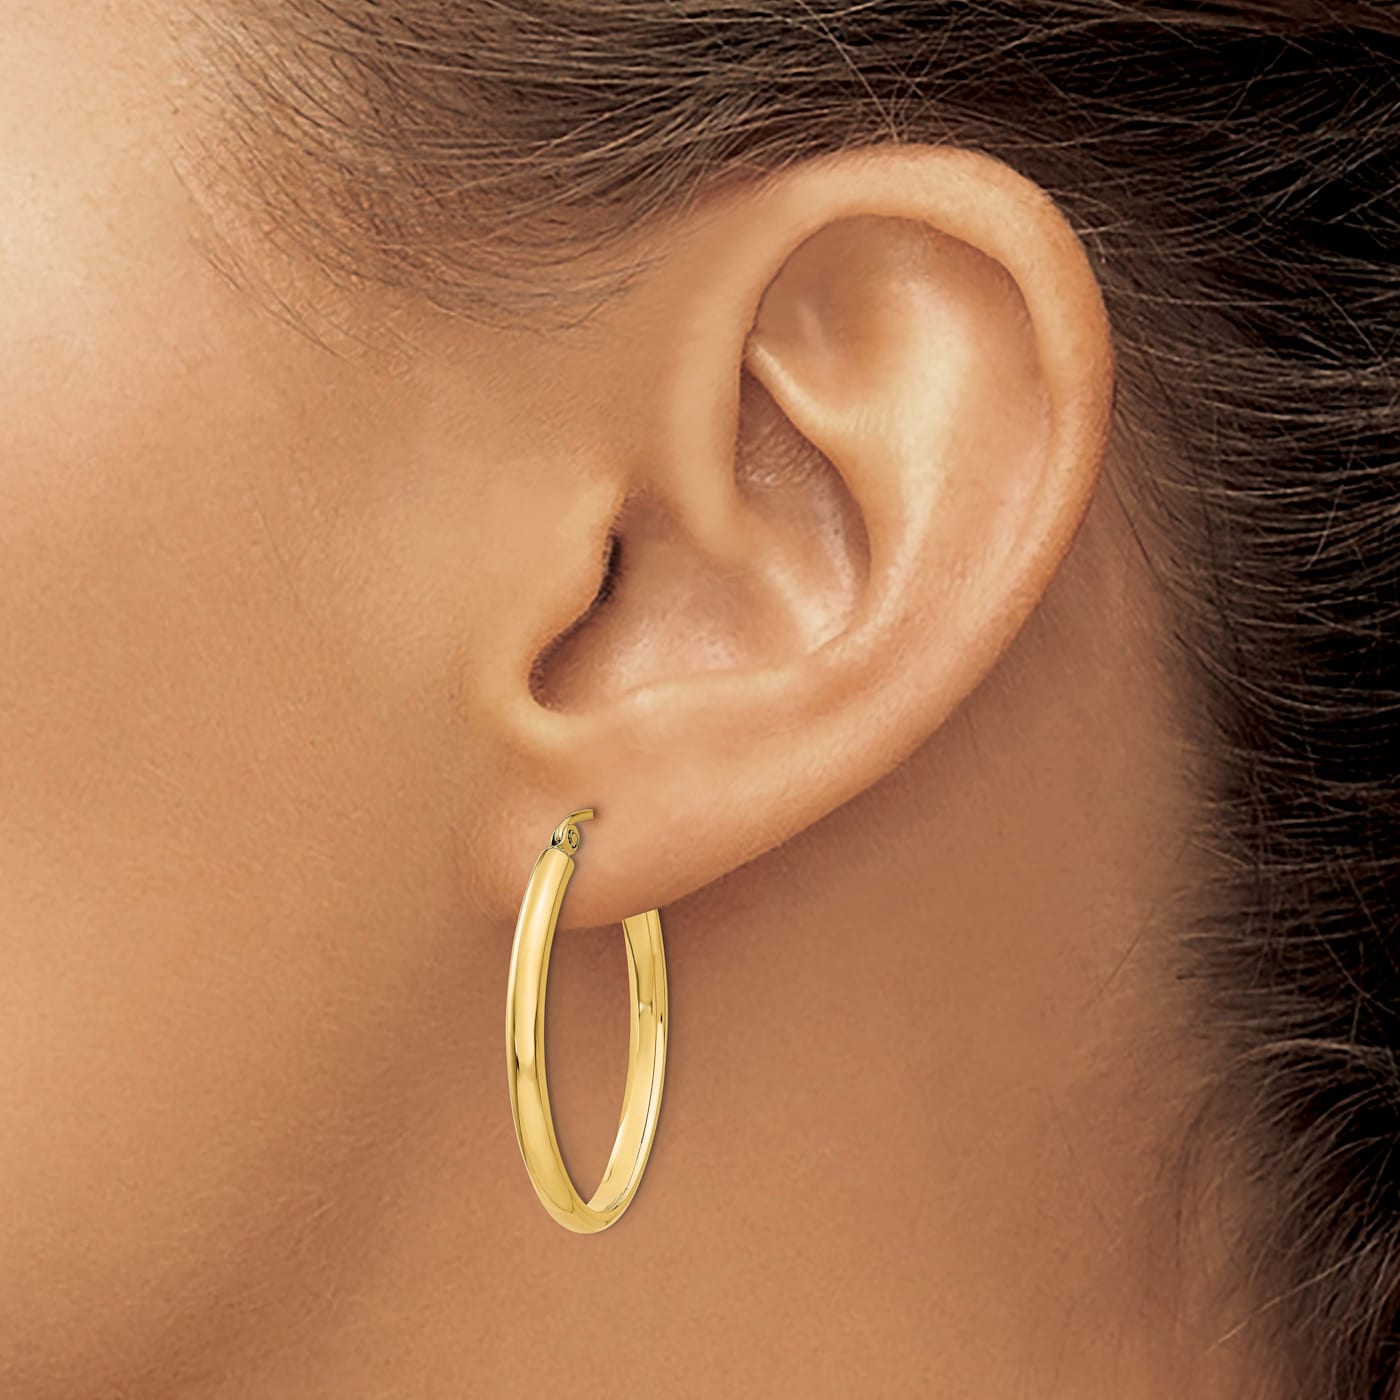 14KT Yellow Gold Oval 6mm Wide Hoop Earrings 30mm – LSJ